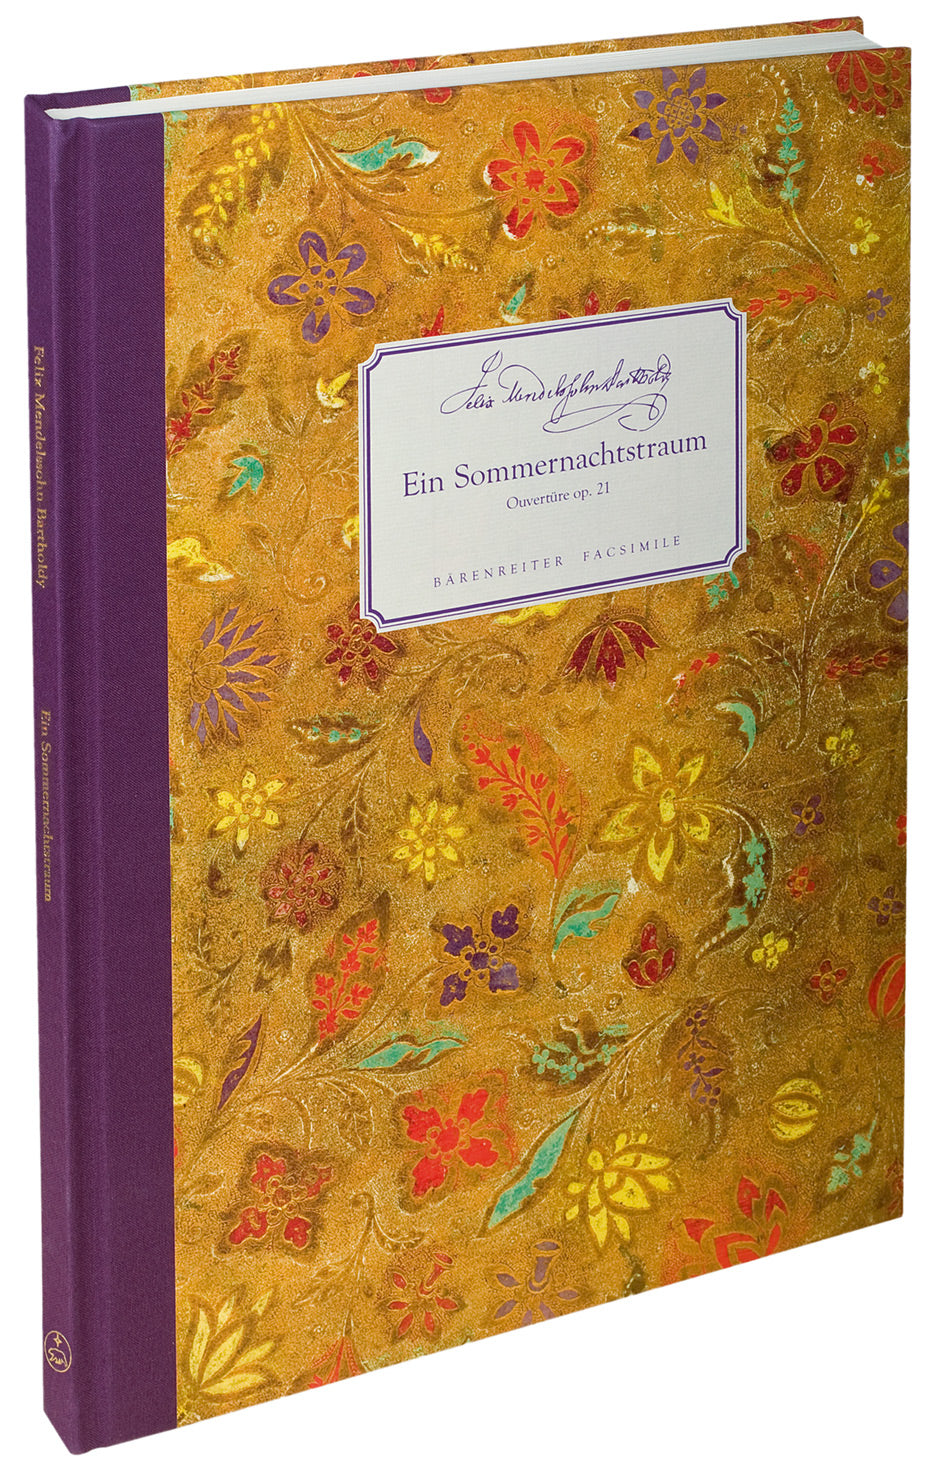 Mendelssohn A Midsummer Night's Dream Op. 21 Overture Autograph